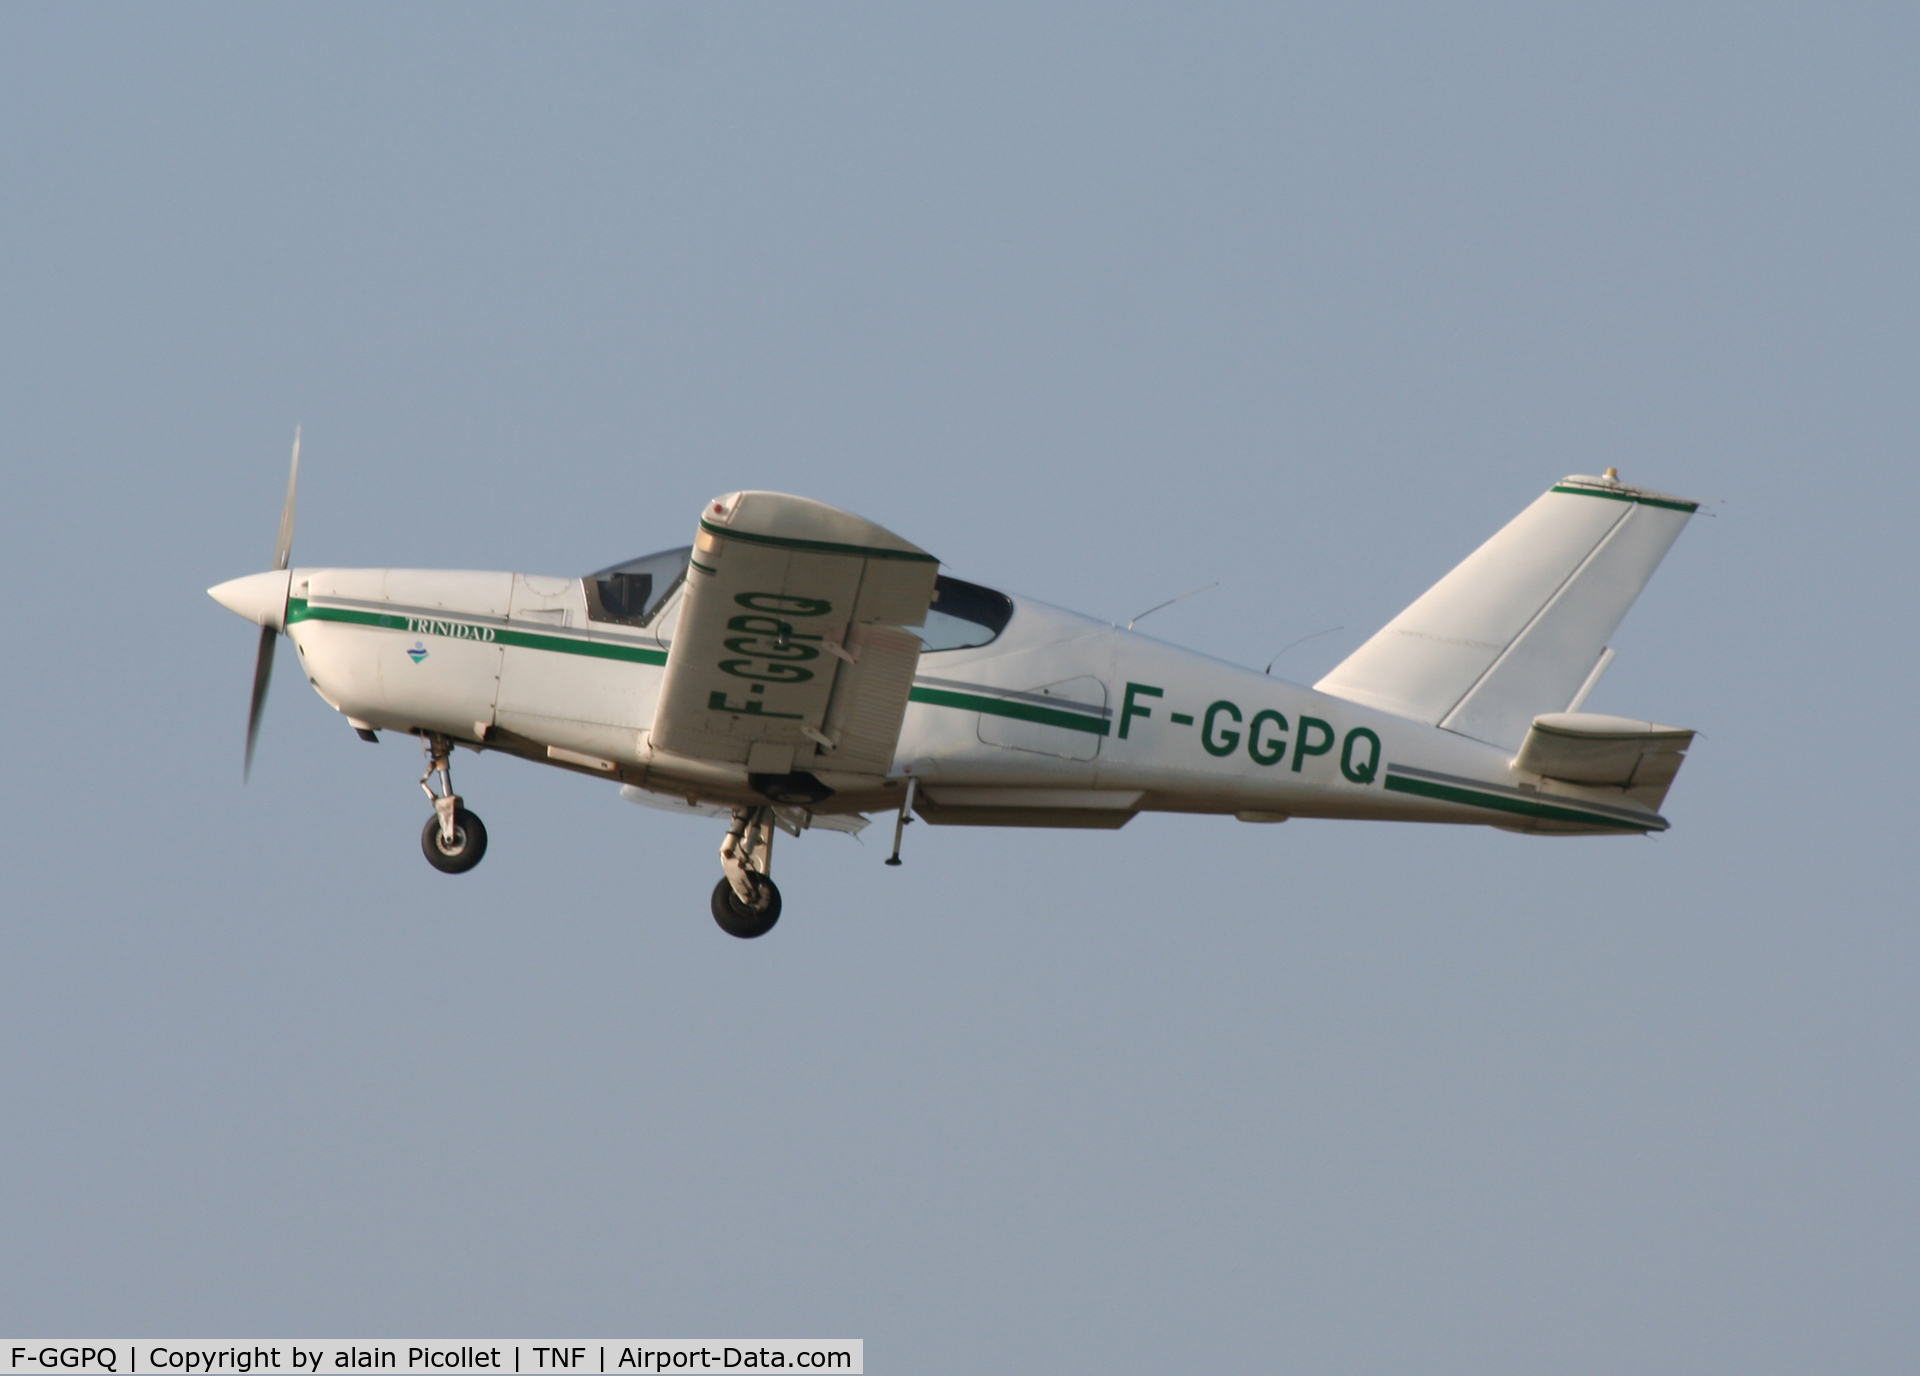 F-GGPQ, Socata TB-20 C/N 972, Take off